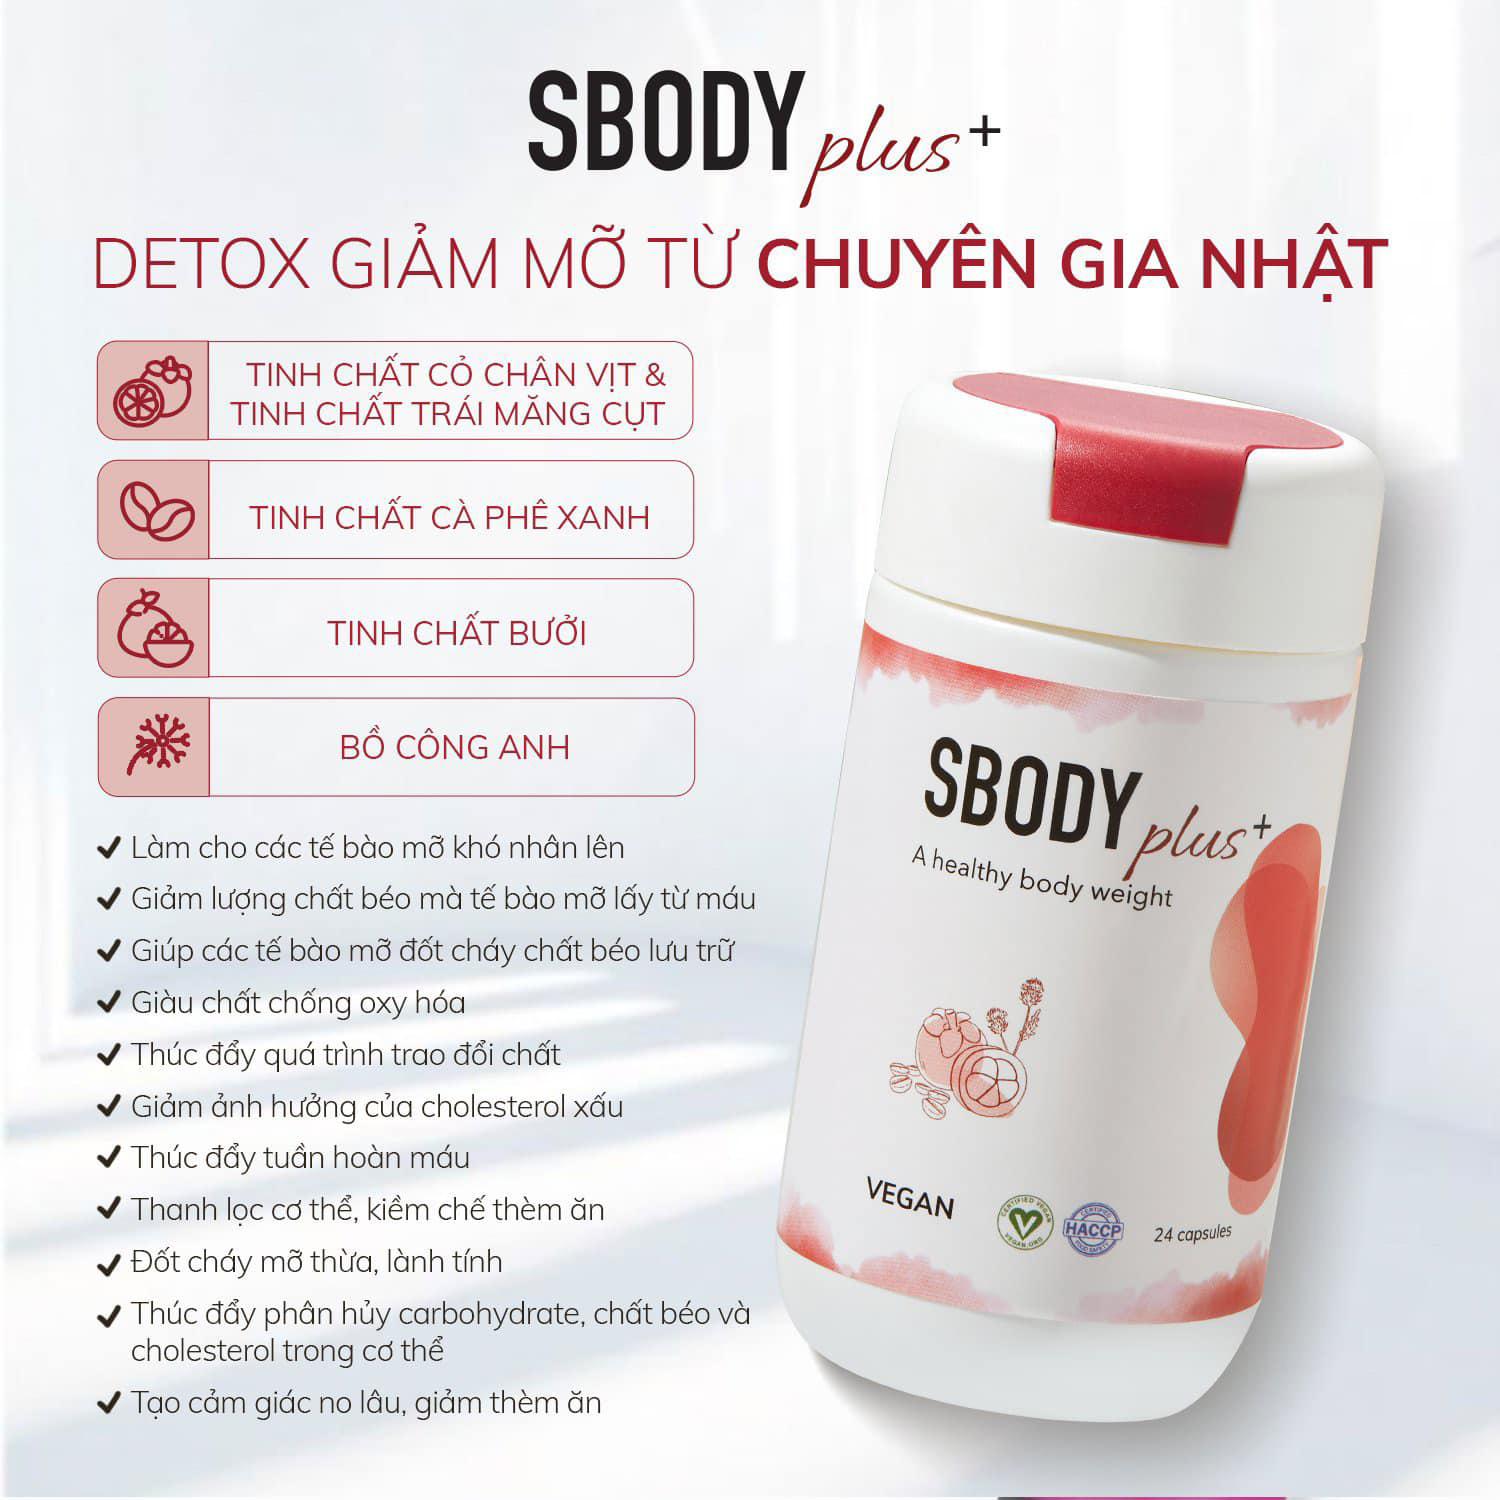 Sbody Plus+ - Detox giảm mỡ từ chuyên gia Nhật